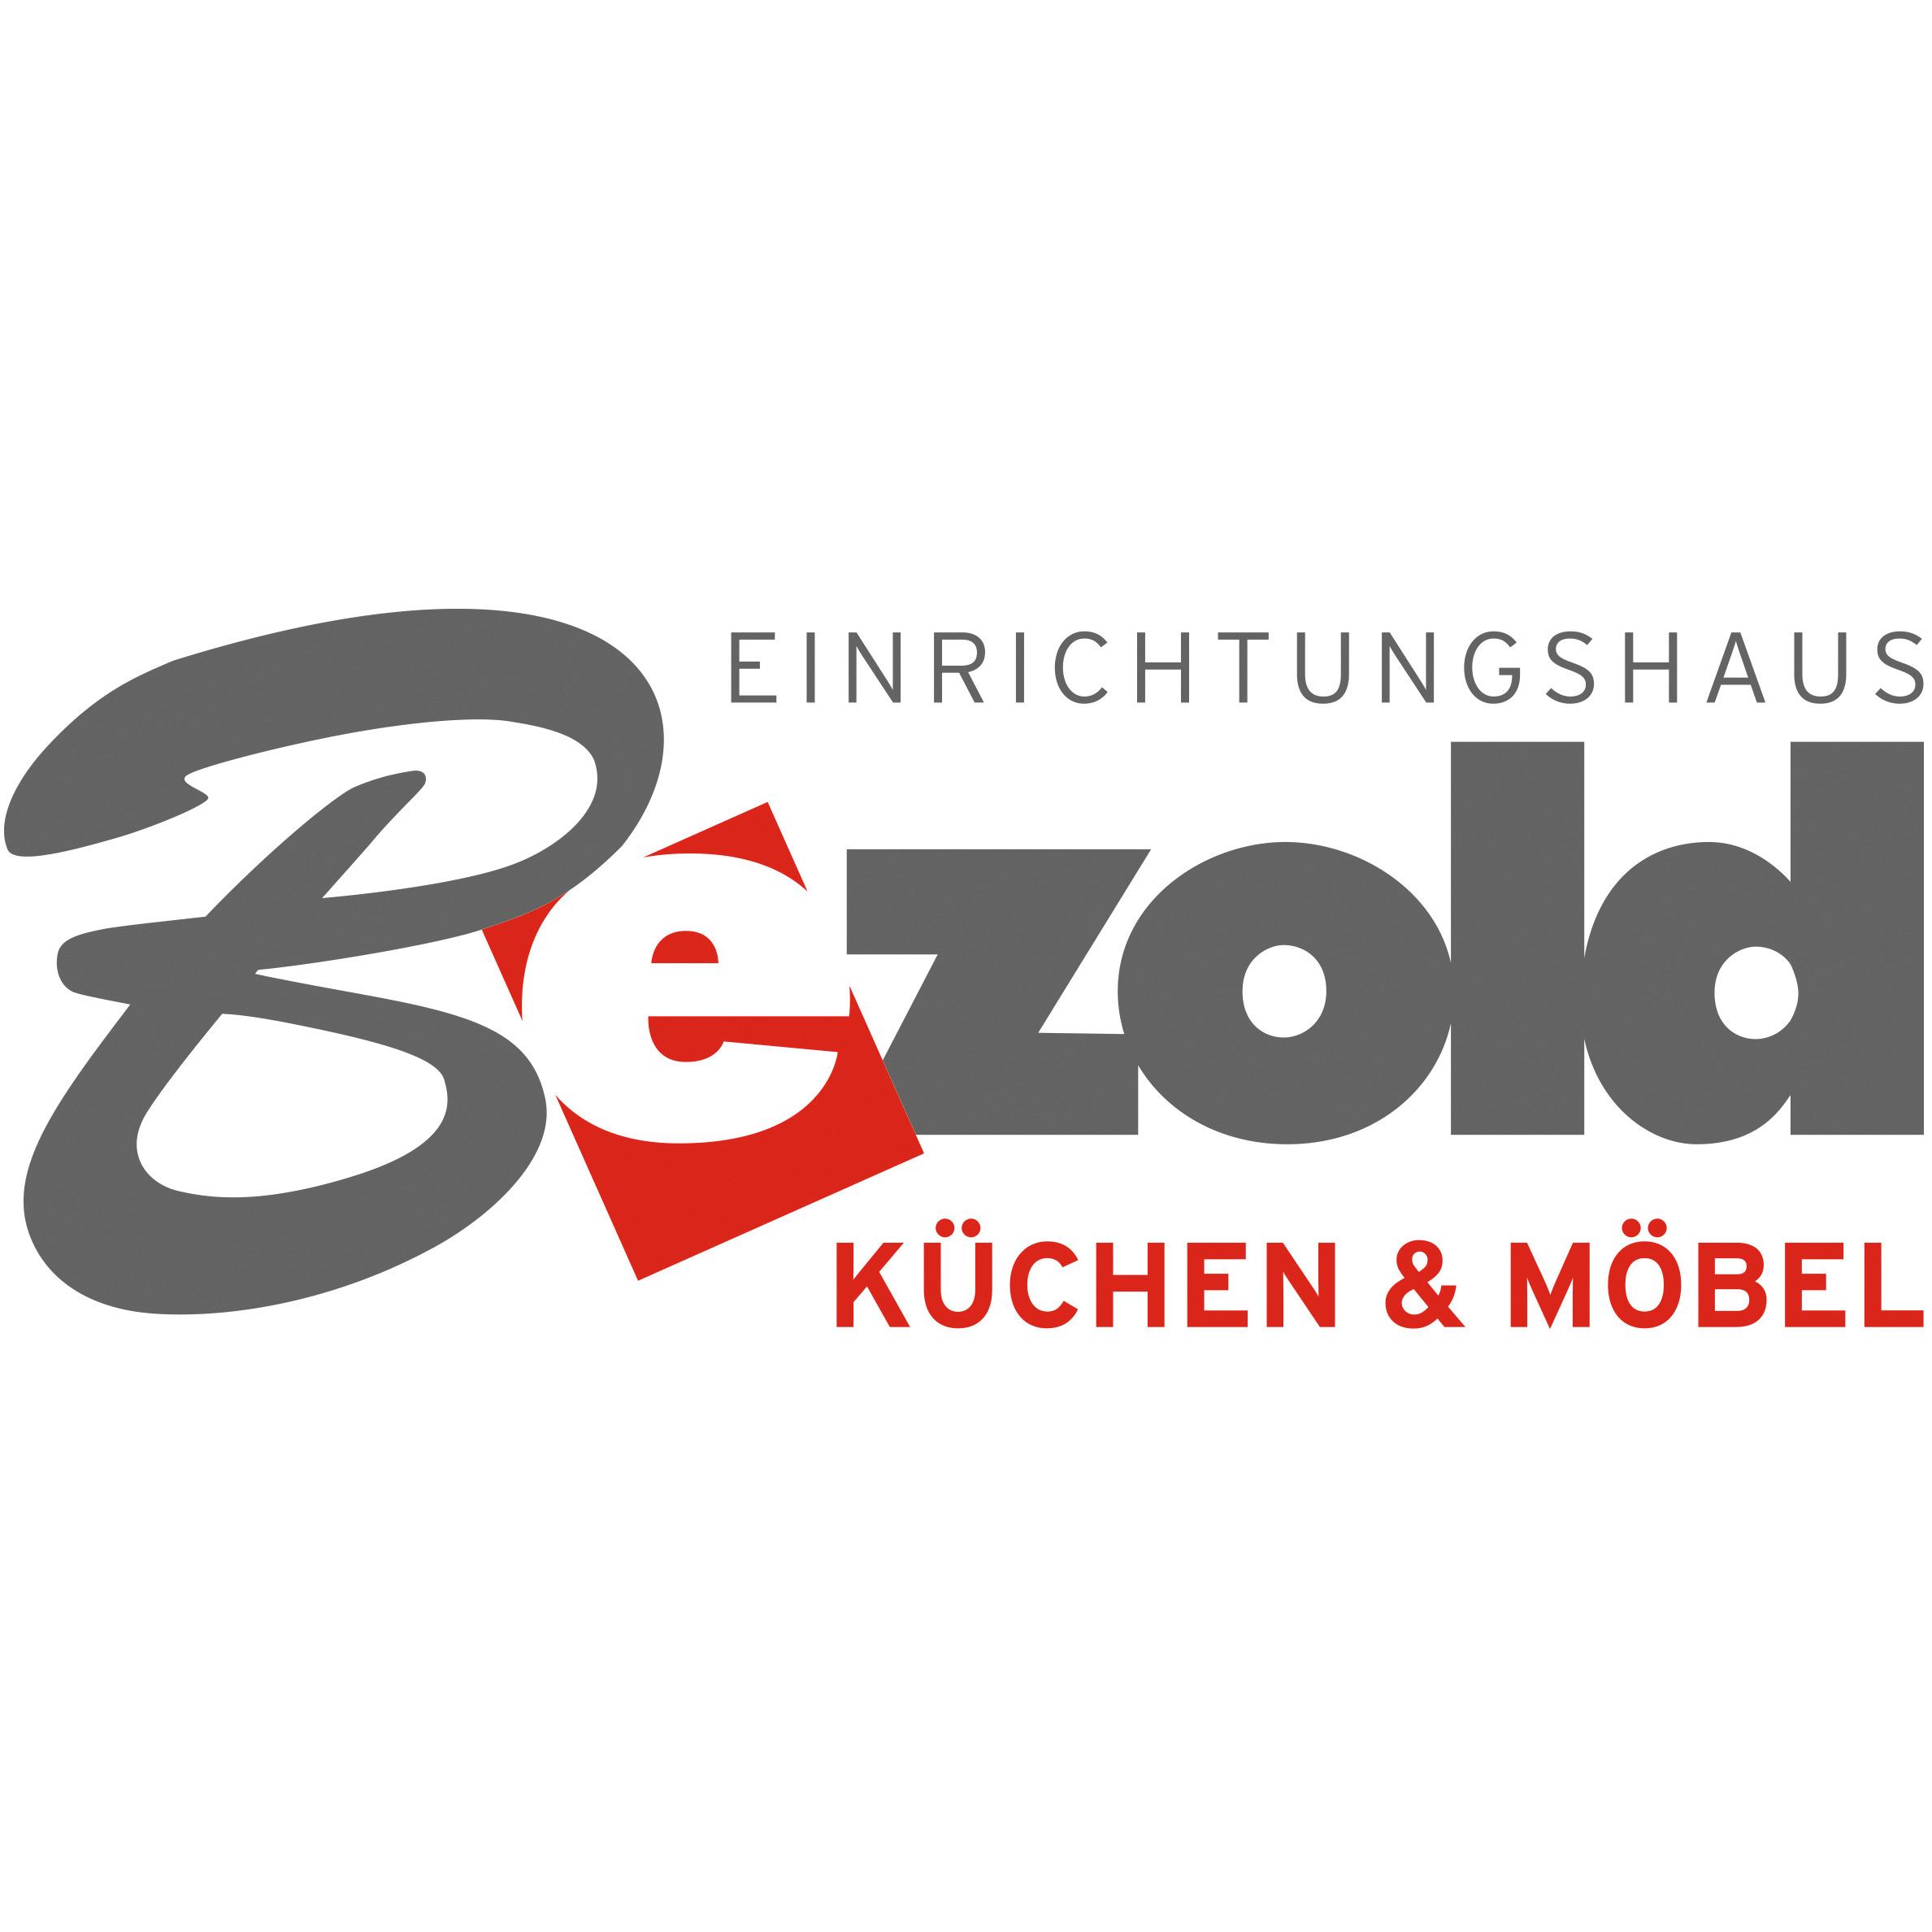 Einrichtungshaus Bezold GmbH & Co. KG Küchen und Möbel Logo